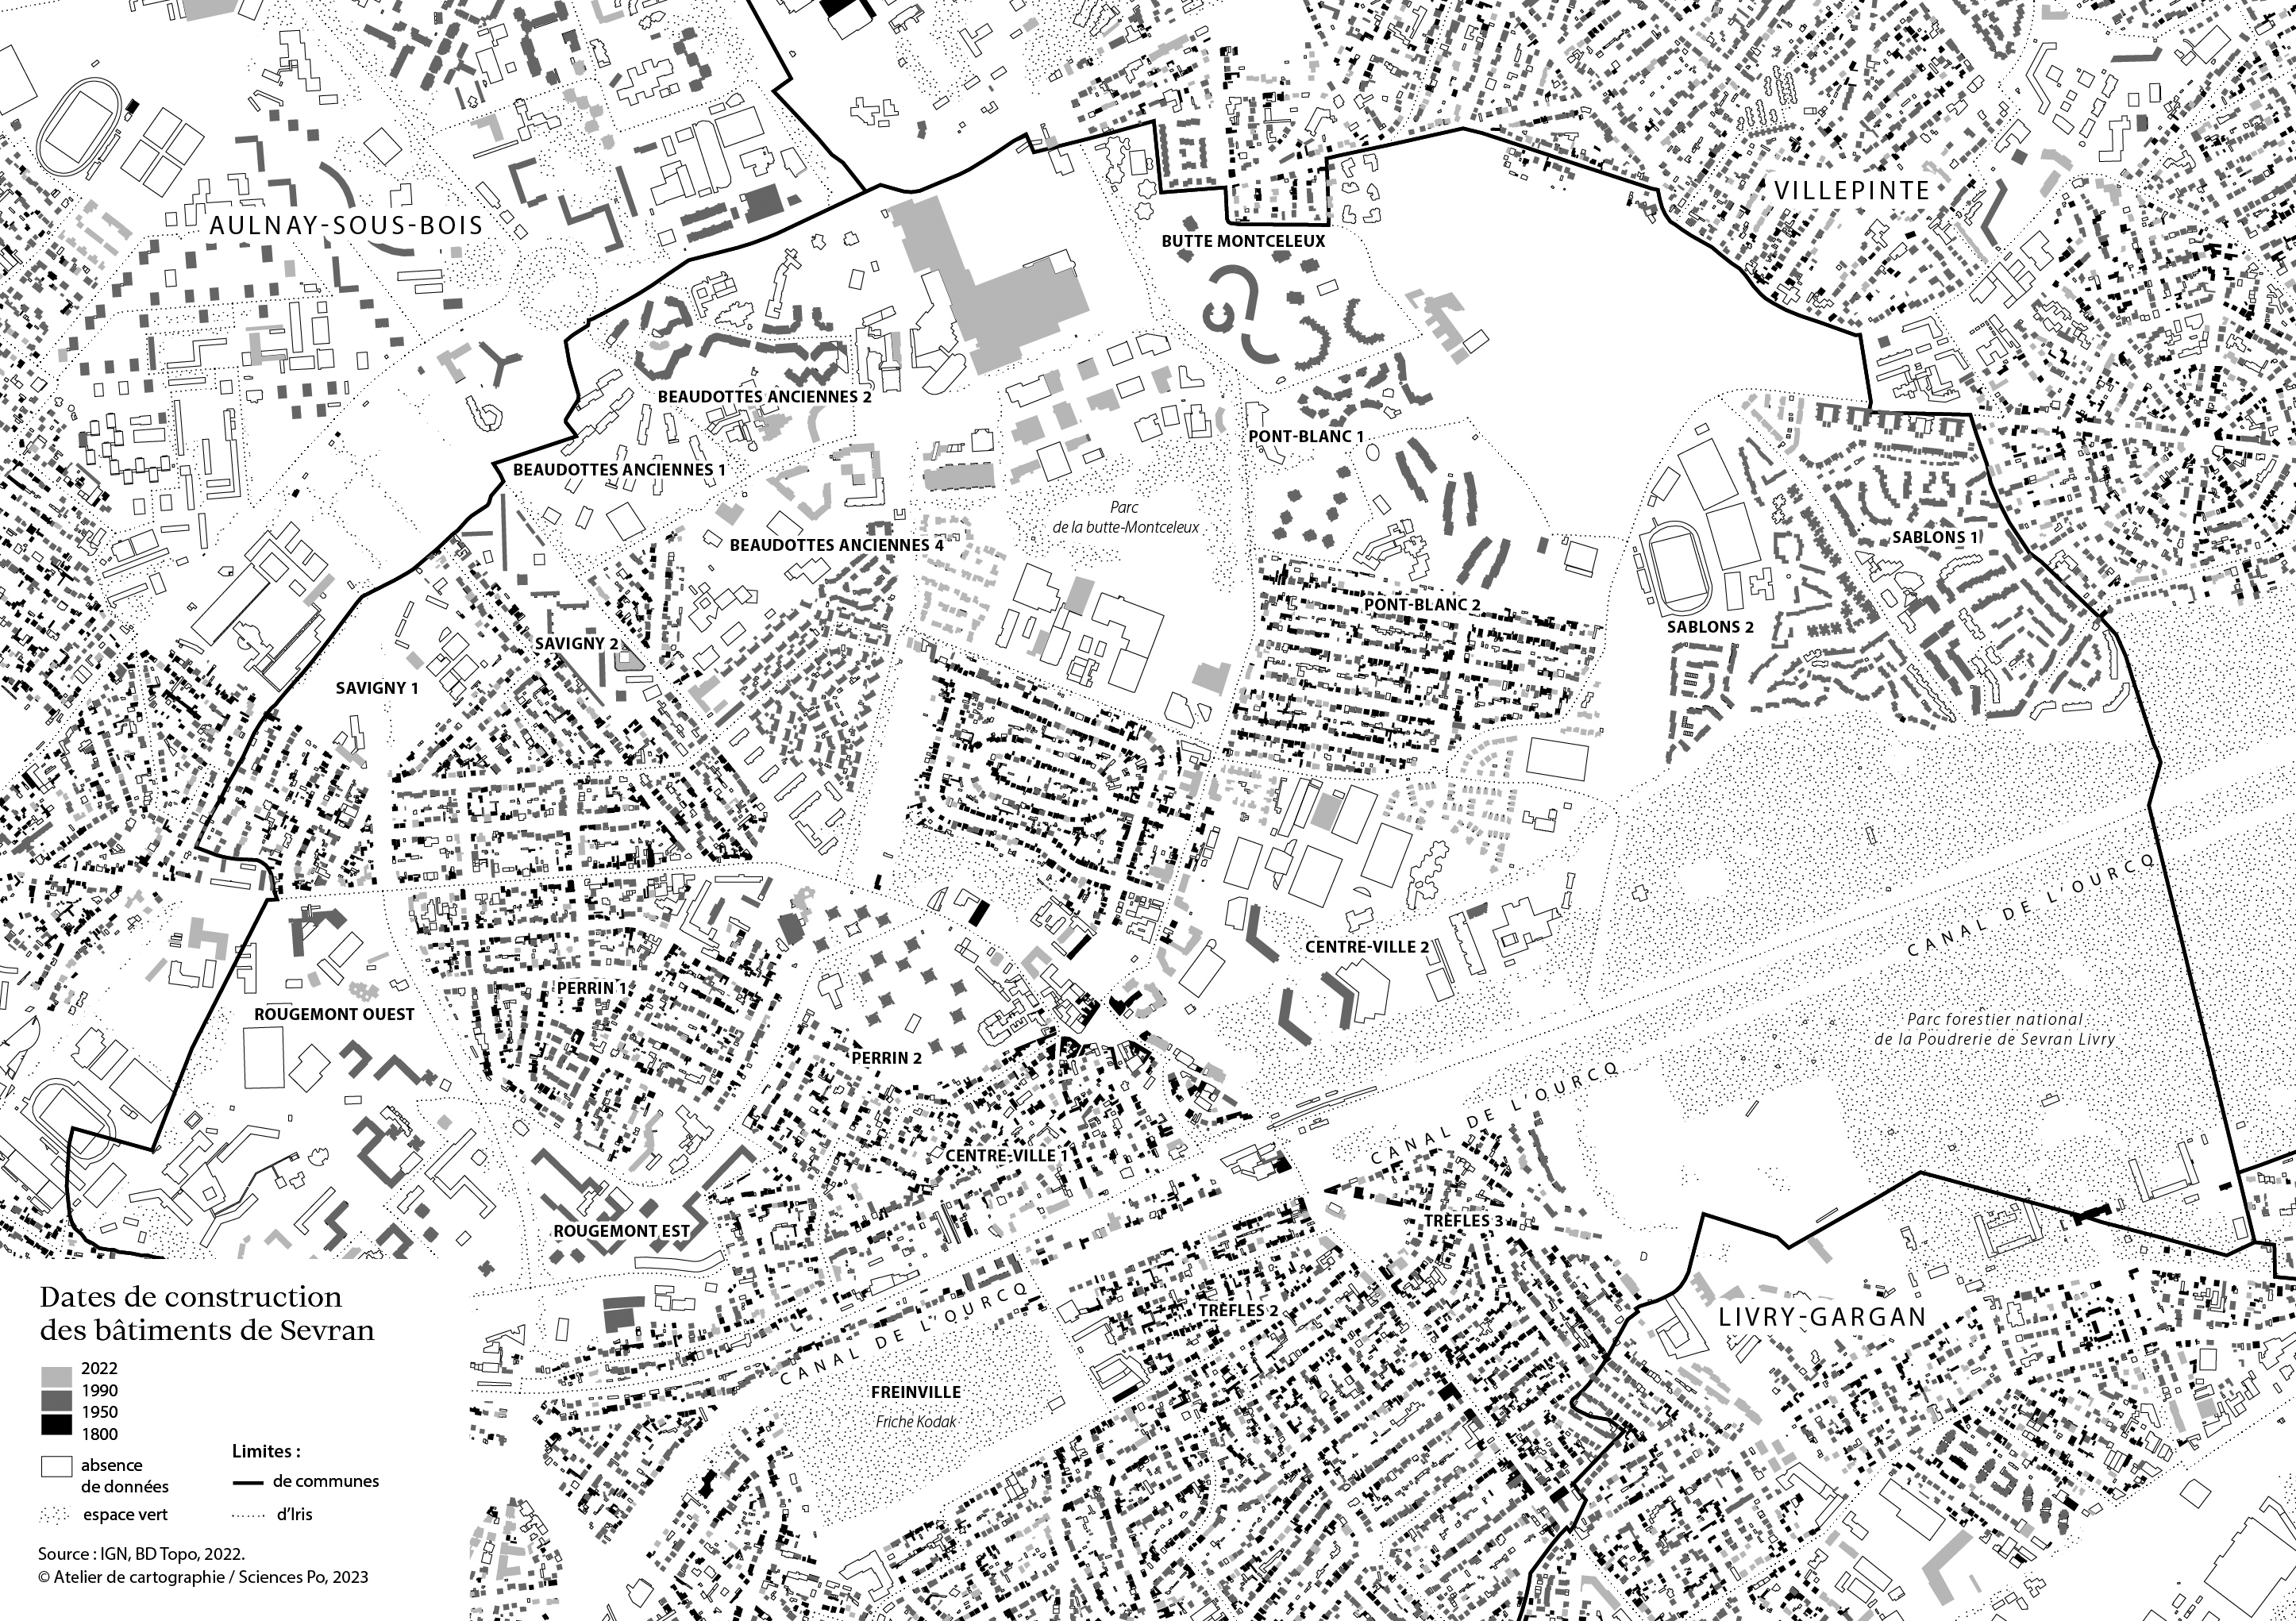 Carte du bâti à Sevran depuis 1800. Crédit : Atelier de cartographie de Sciences Po.